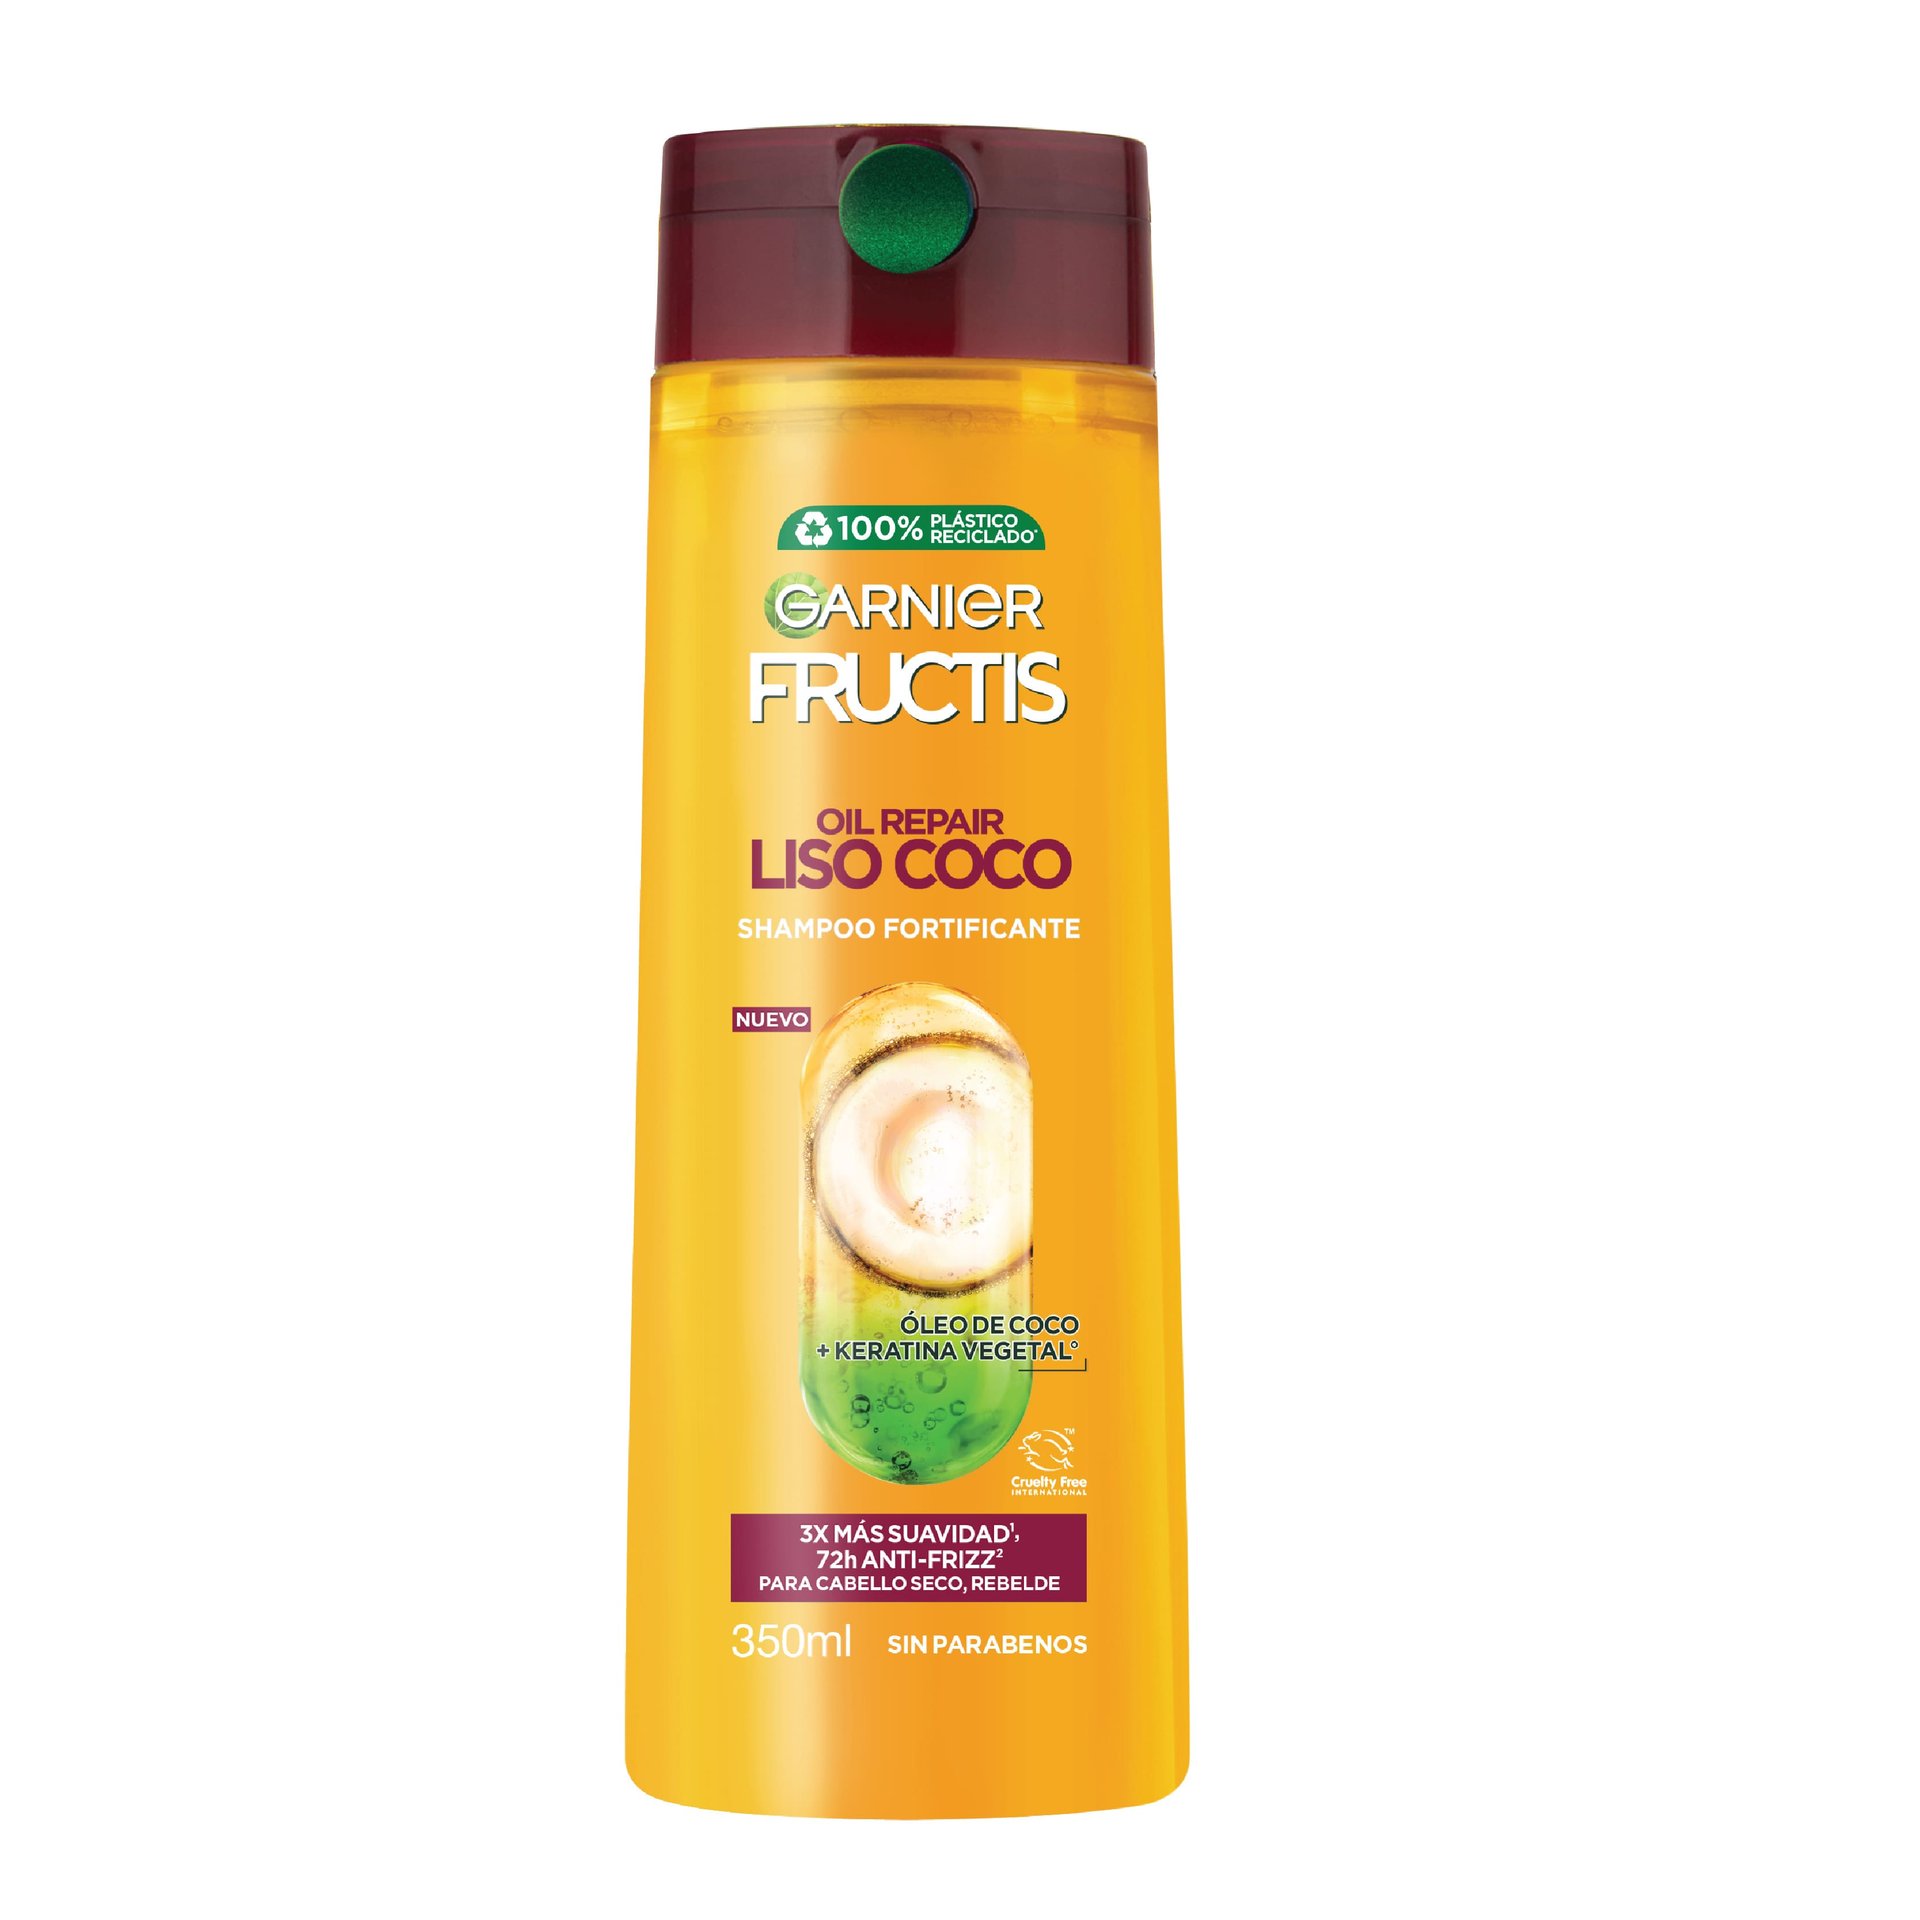 Shampoo Fructis de coco para cabello liso